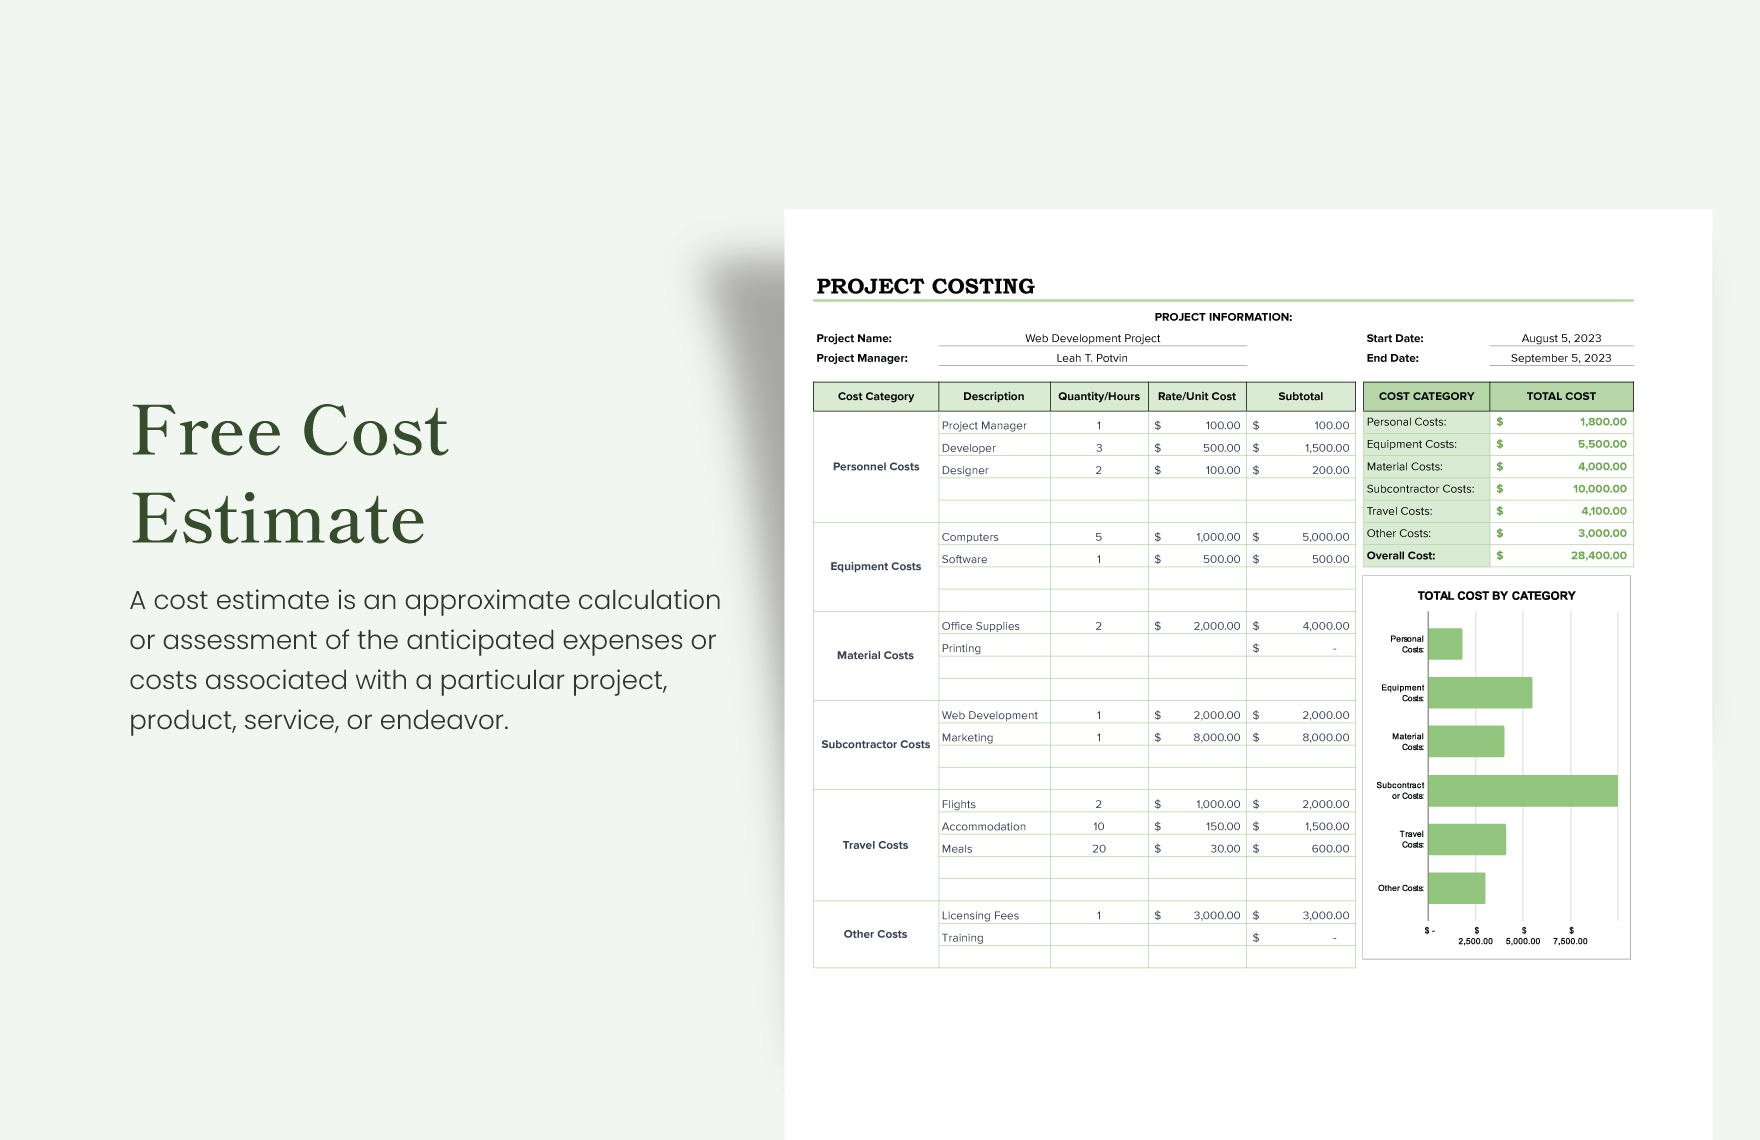 cost-estimate